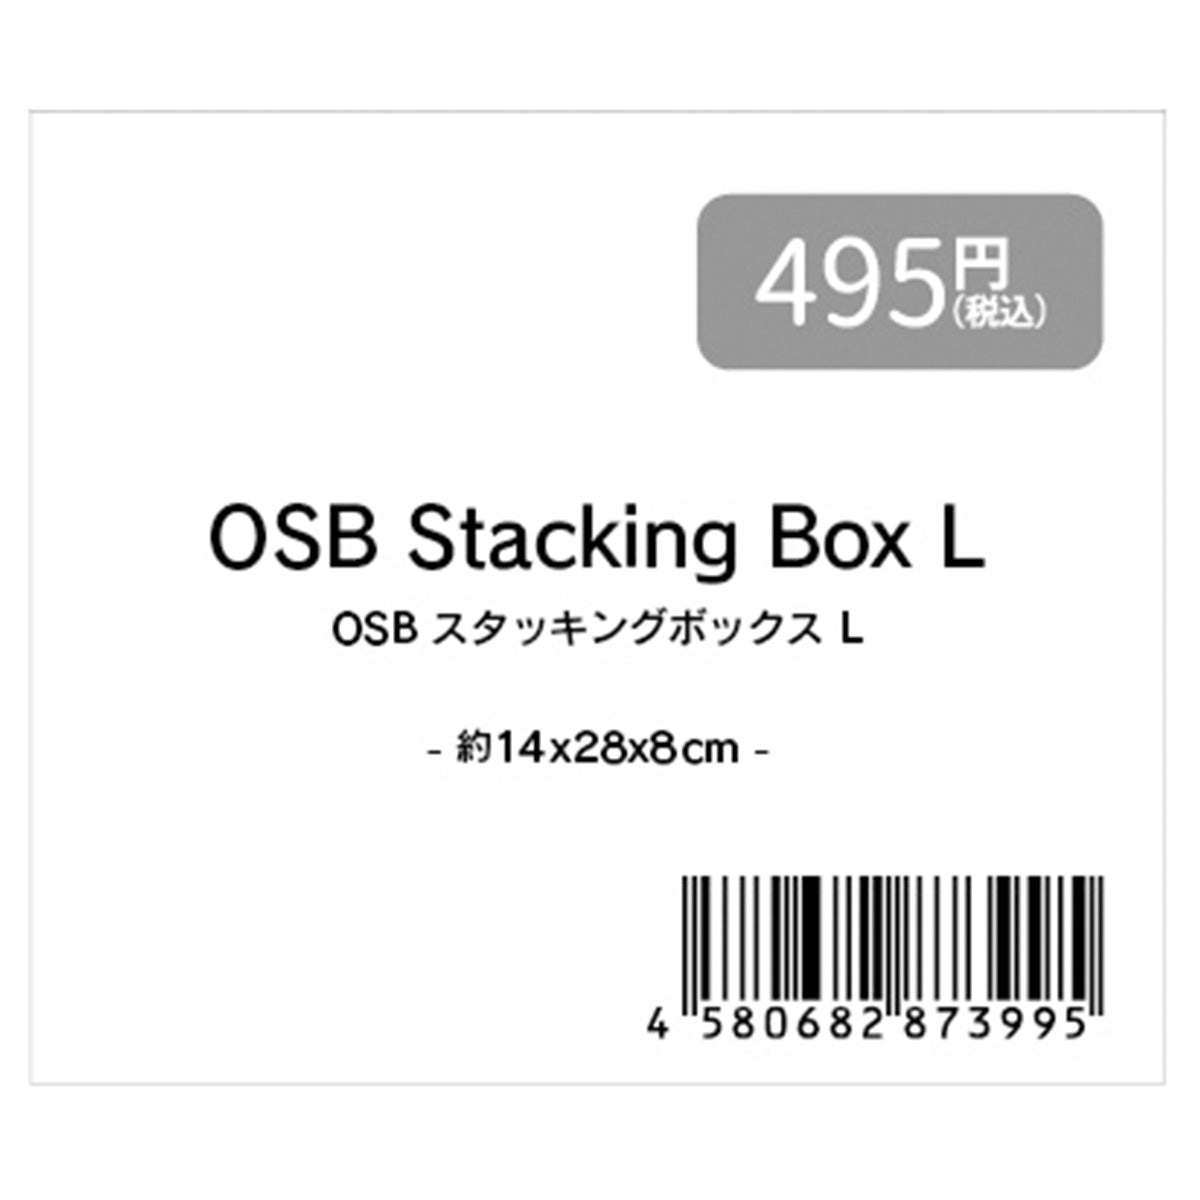 収納ボックス 小物ケース ナチュラル OSBスタッキングボックスL 約14x28x8cm 353368